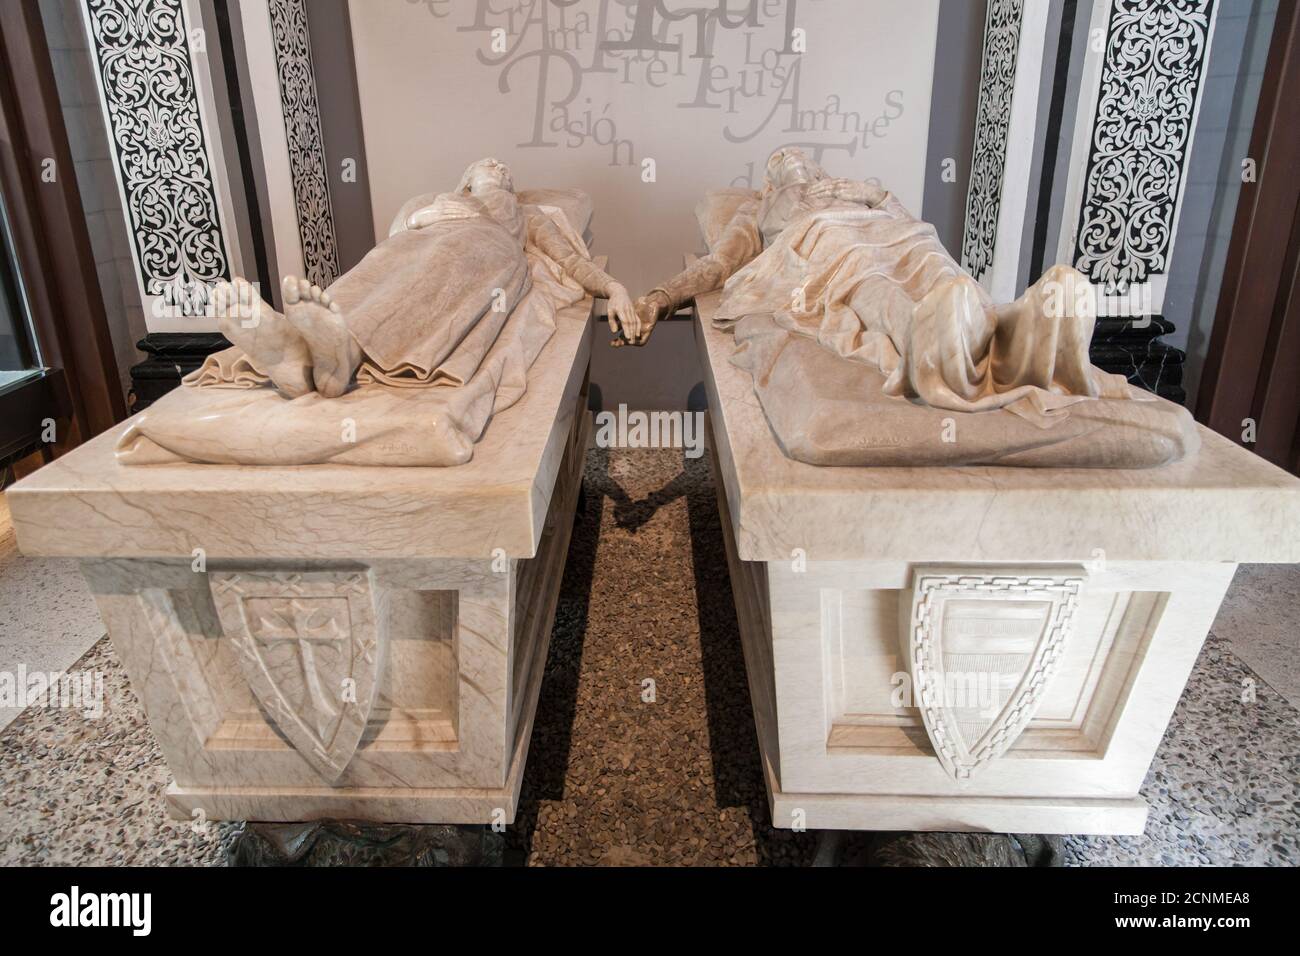 Teruel, Espagne - 17 août 2020 : mausolée d'Isabel de Segura et de Diego de Marcilla, les amoureux de Teruel, dans l'église de San Pedro, Teruel, Espagne Banque D'Images